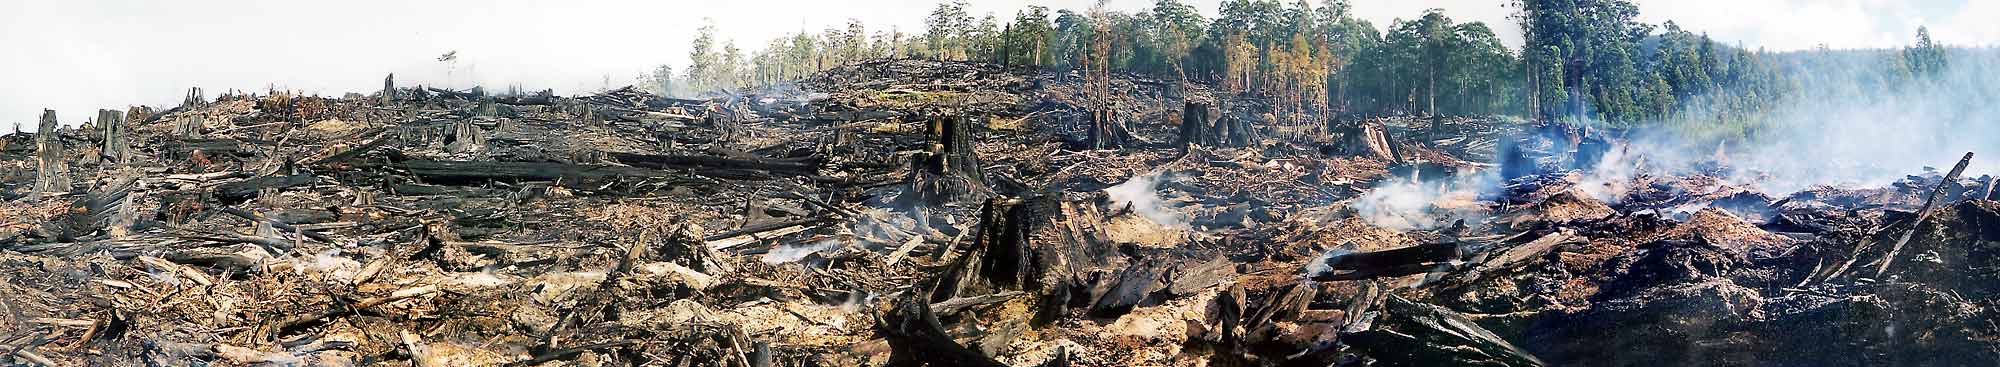 森林伐採問題